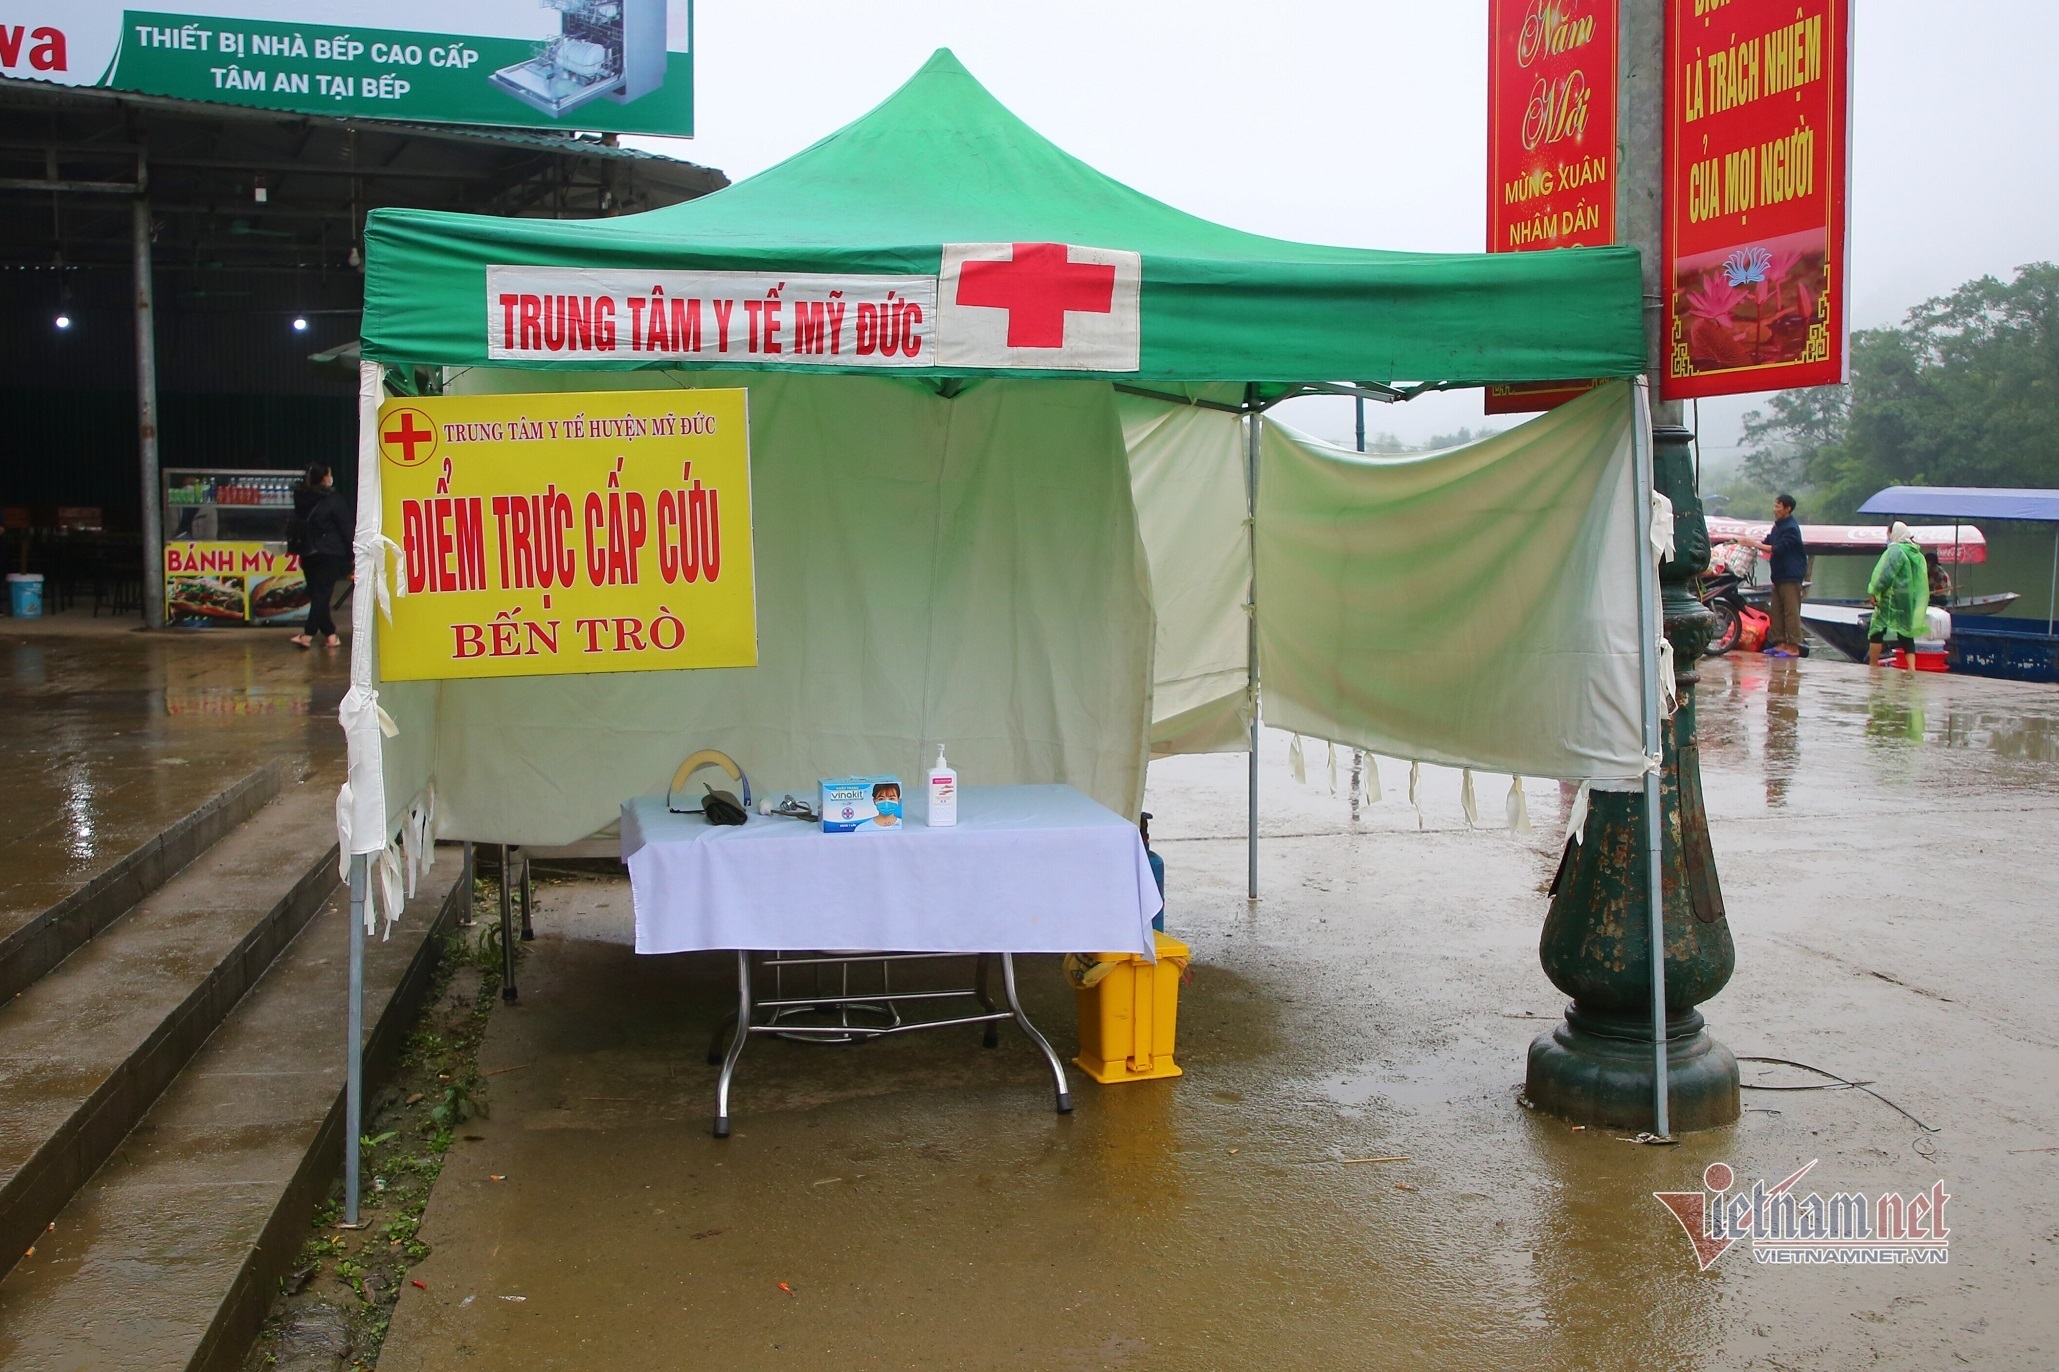 Dòng người đội mưa trẩy hội chùa Hương